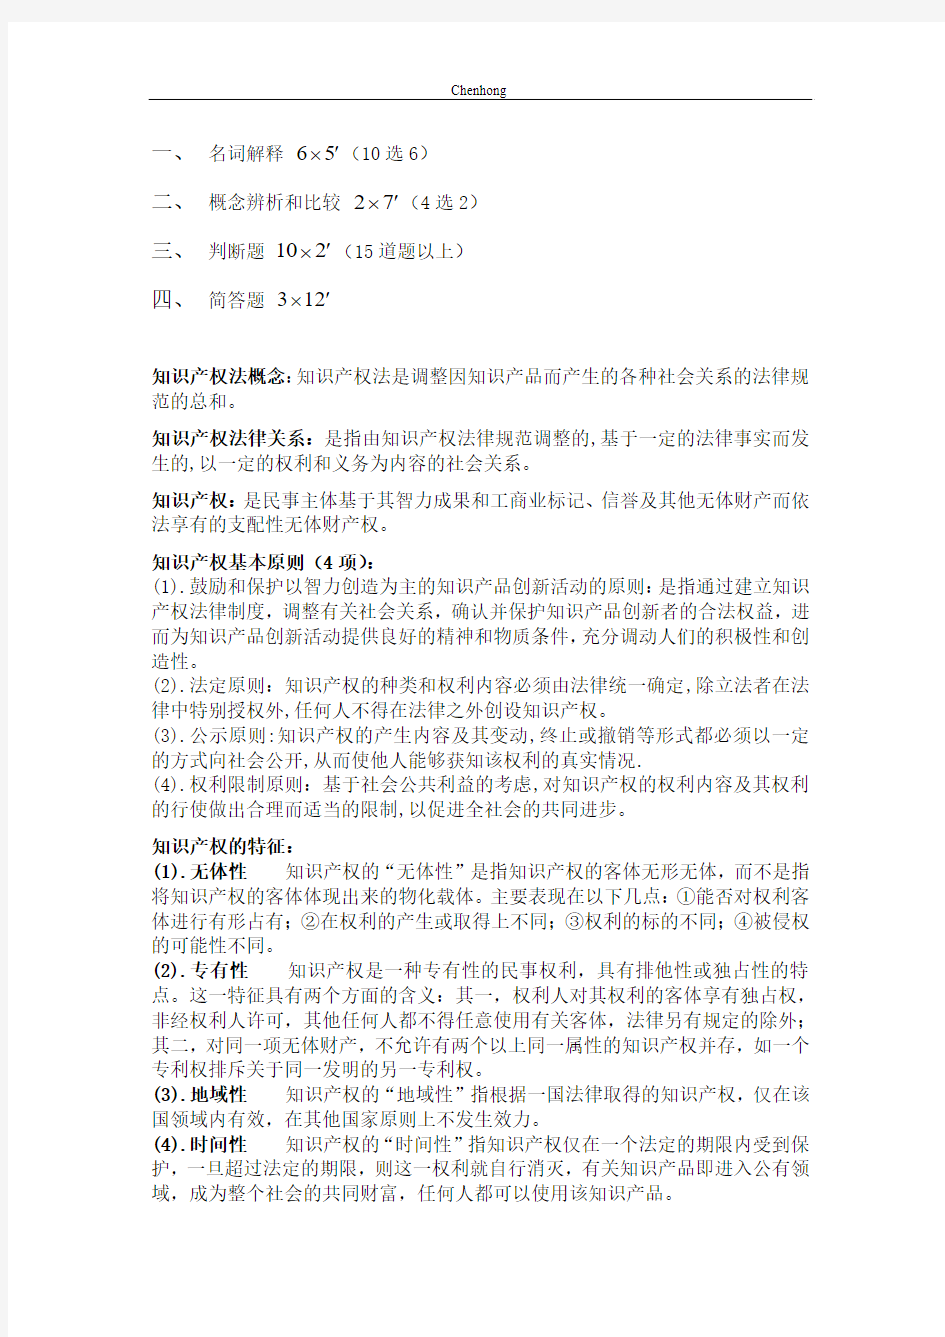 武汉大学2014-2015学年第一学期期末考试知识产权考点